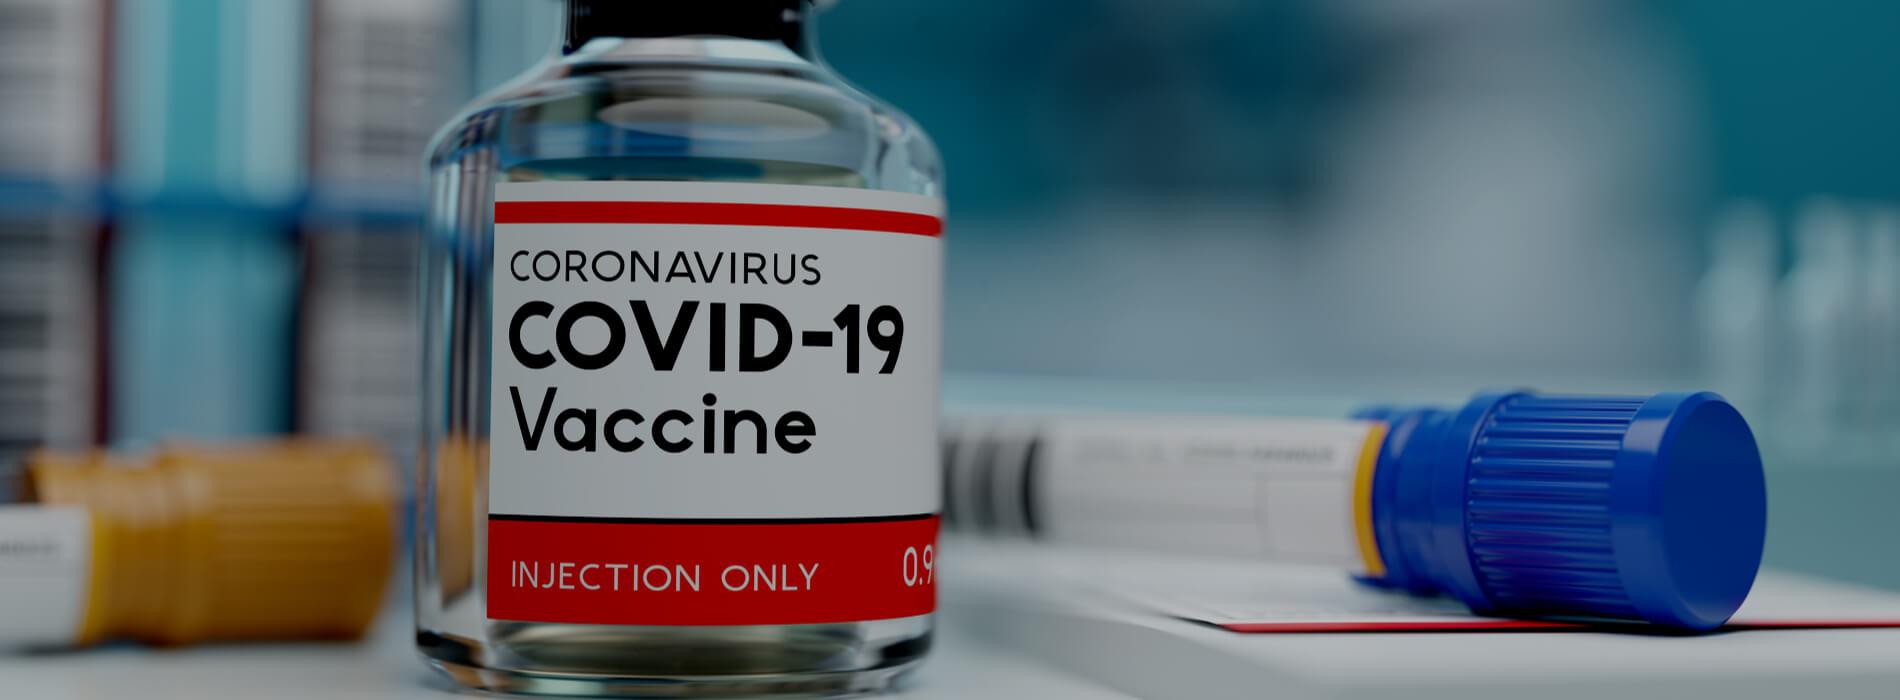 Szczepionka na koronawirusa - rozpoczęto pierwsze badania kliniczne